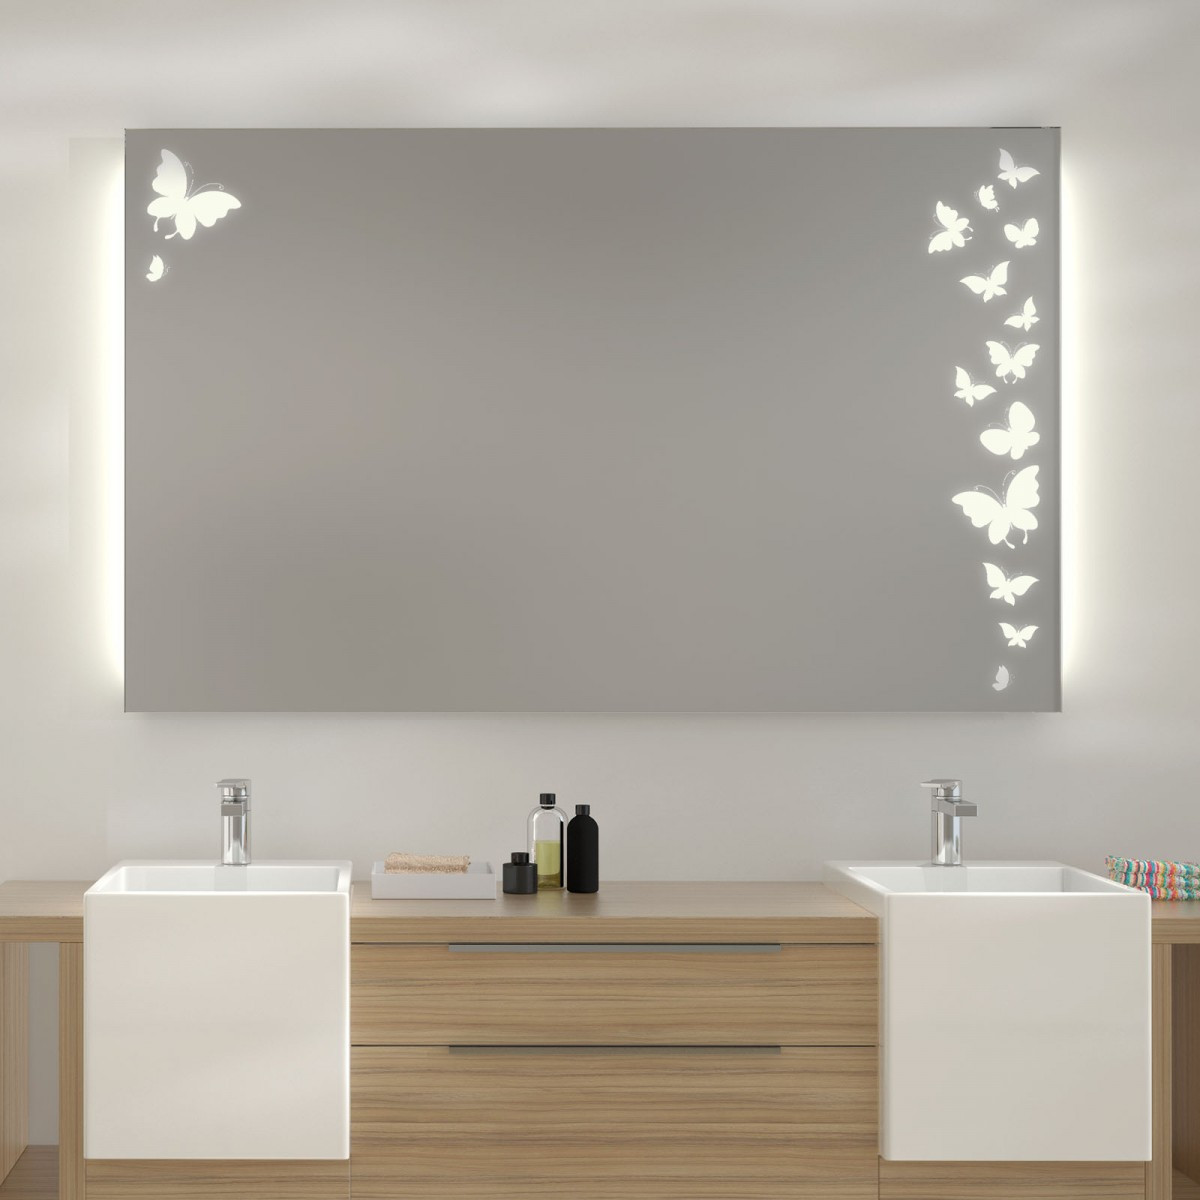 Badezimmerspiegel Mit Beleuchtung
 Wandspiegel kaufen Spiegel nach Maß